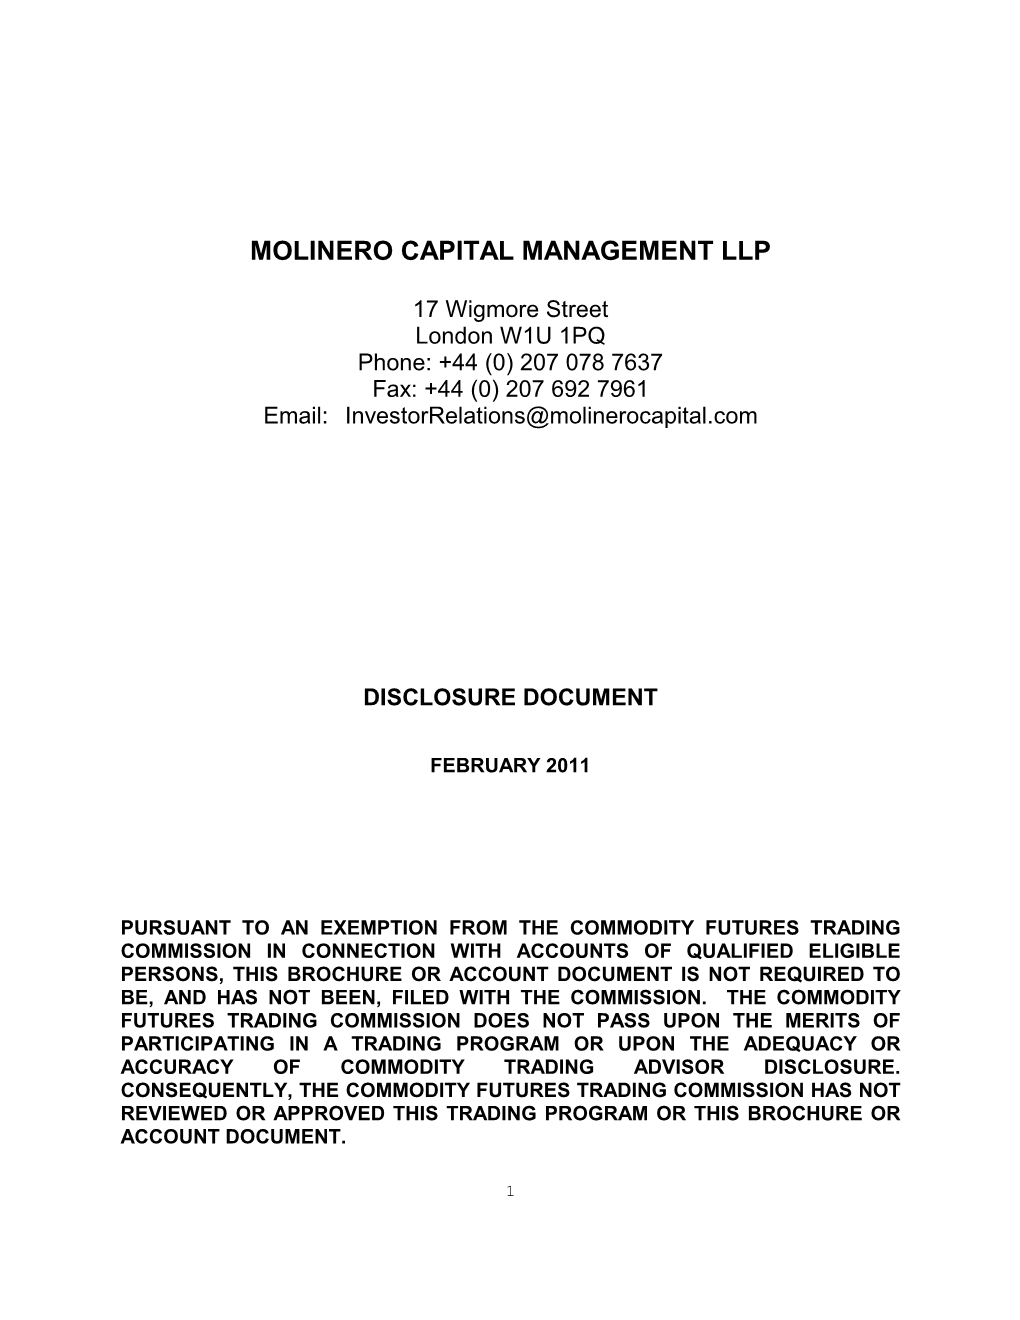 MCM Disclosure Document